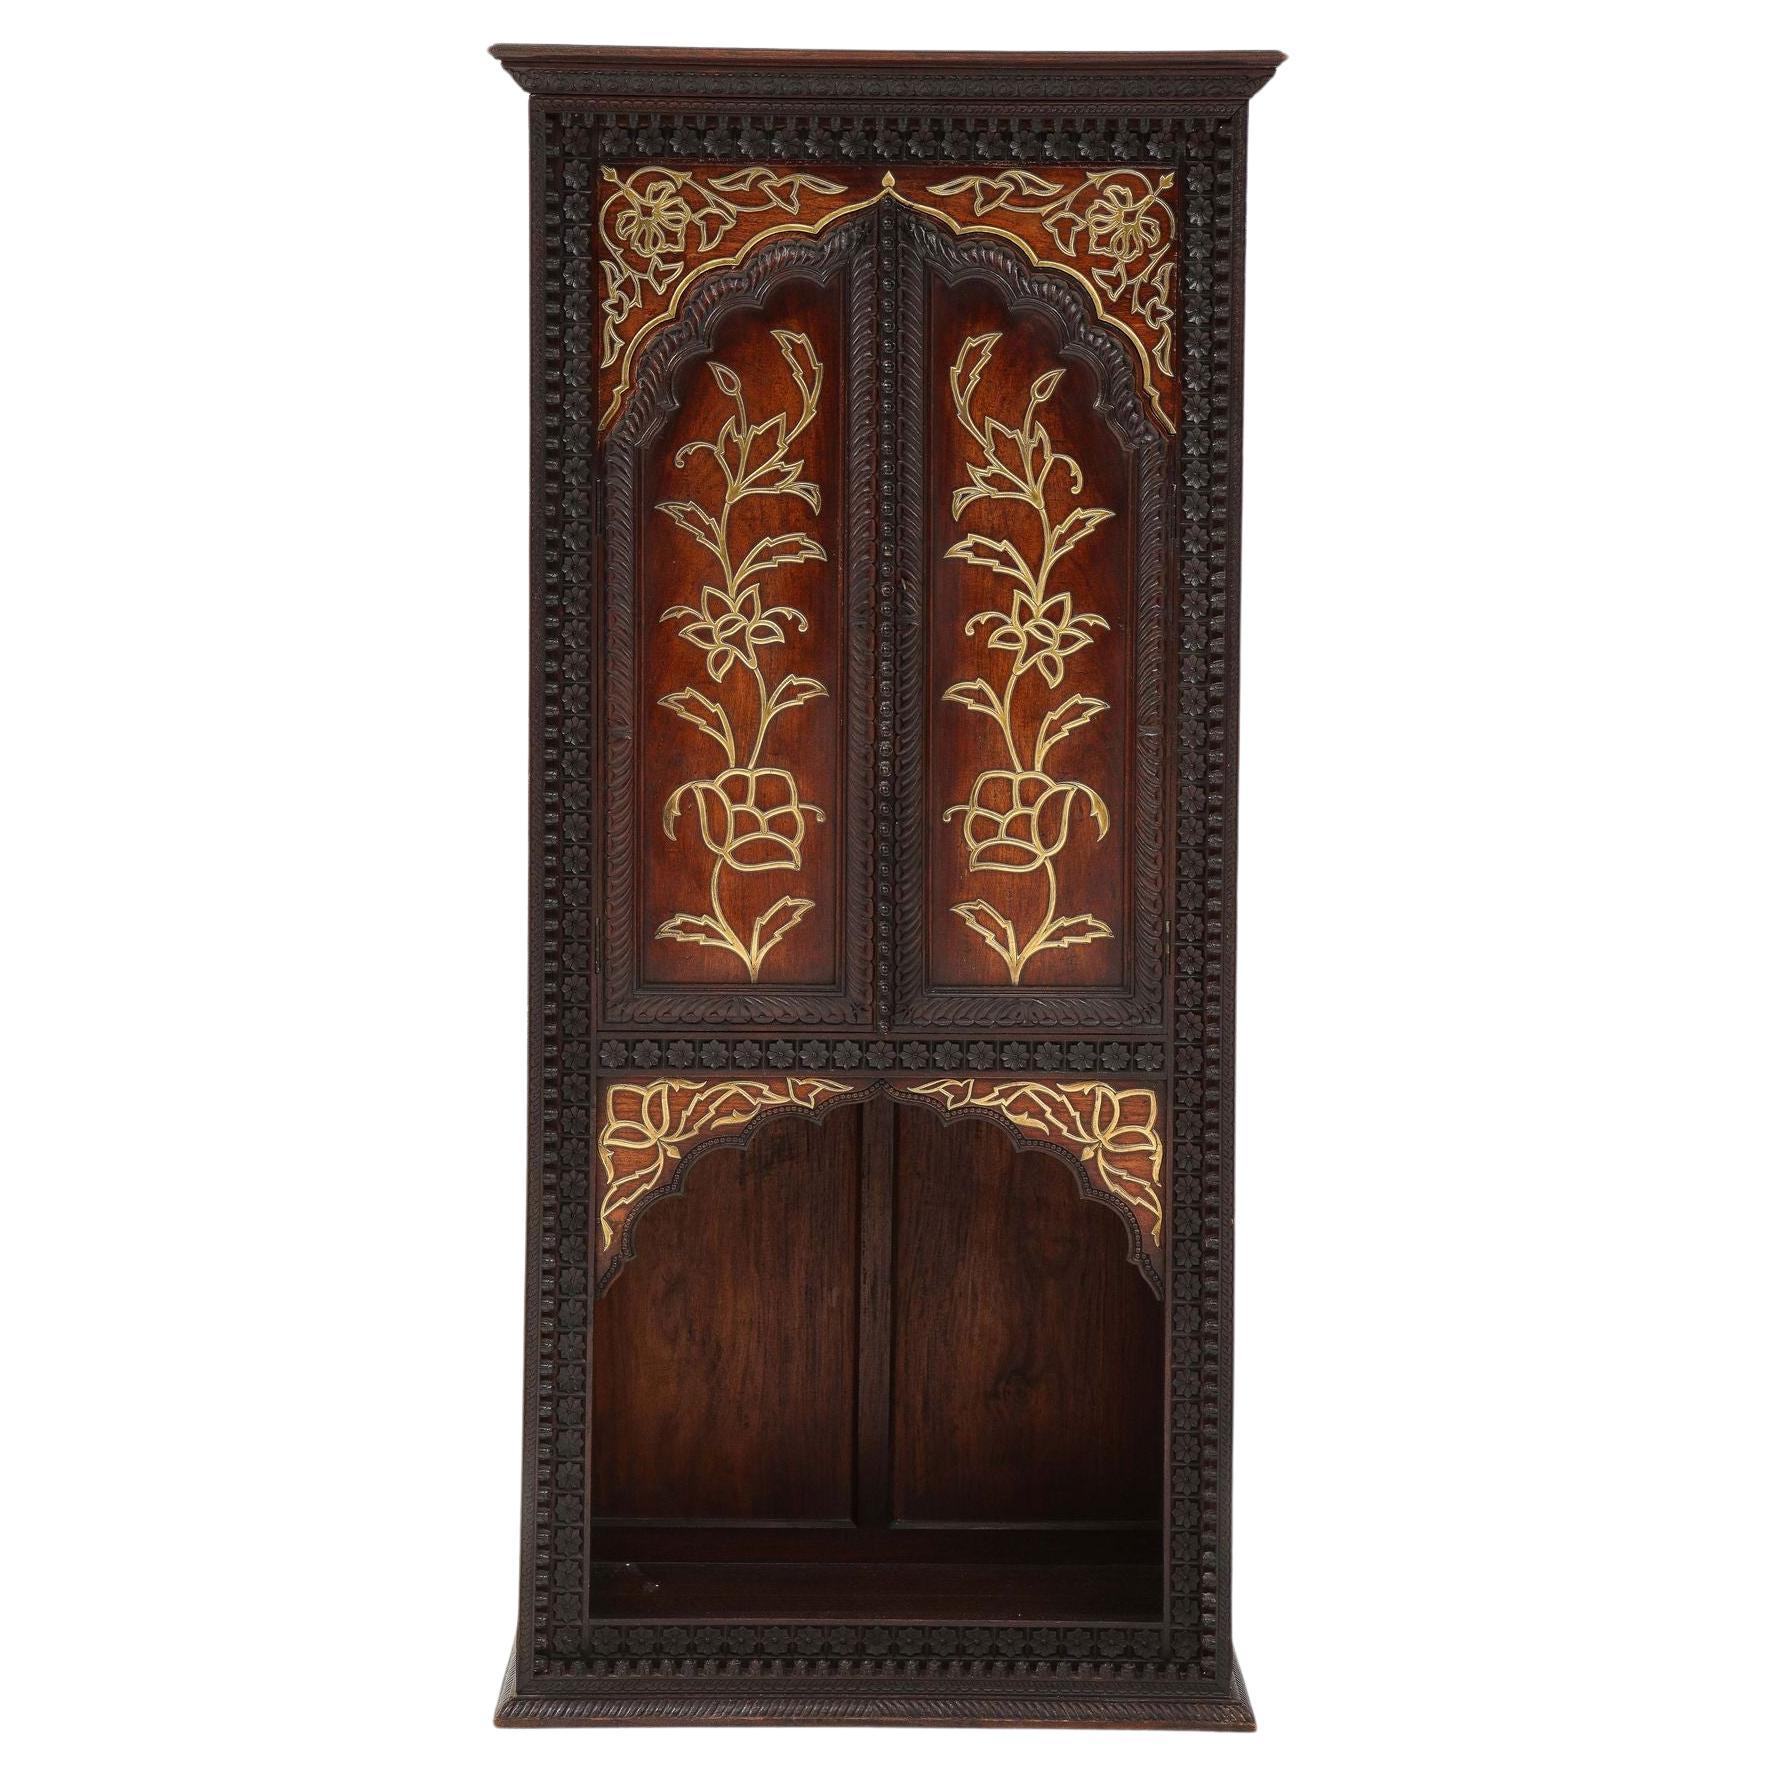 Très belle armoire indienne de la fin du XIXe siècle, en bois dur exotique richement sculpté avec une décoration moulée en laiton dans le goût esthétique, les deux portes arquées au-dessus de la section inférieure ouverte, avec une garniture unique